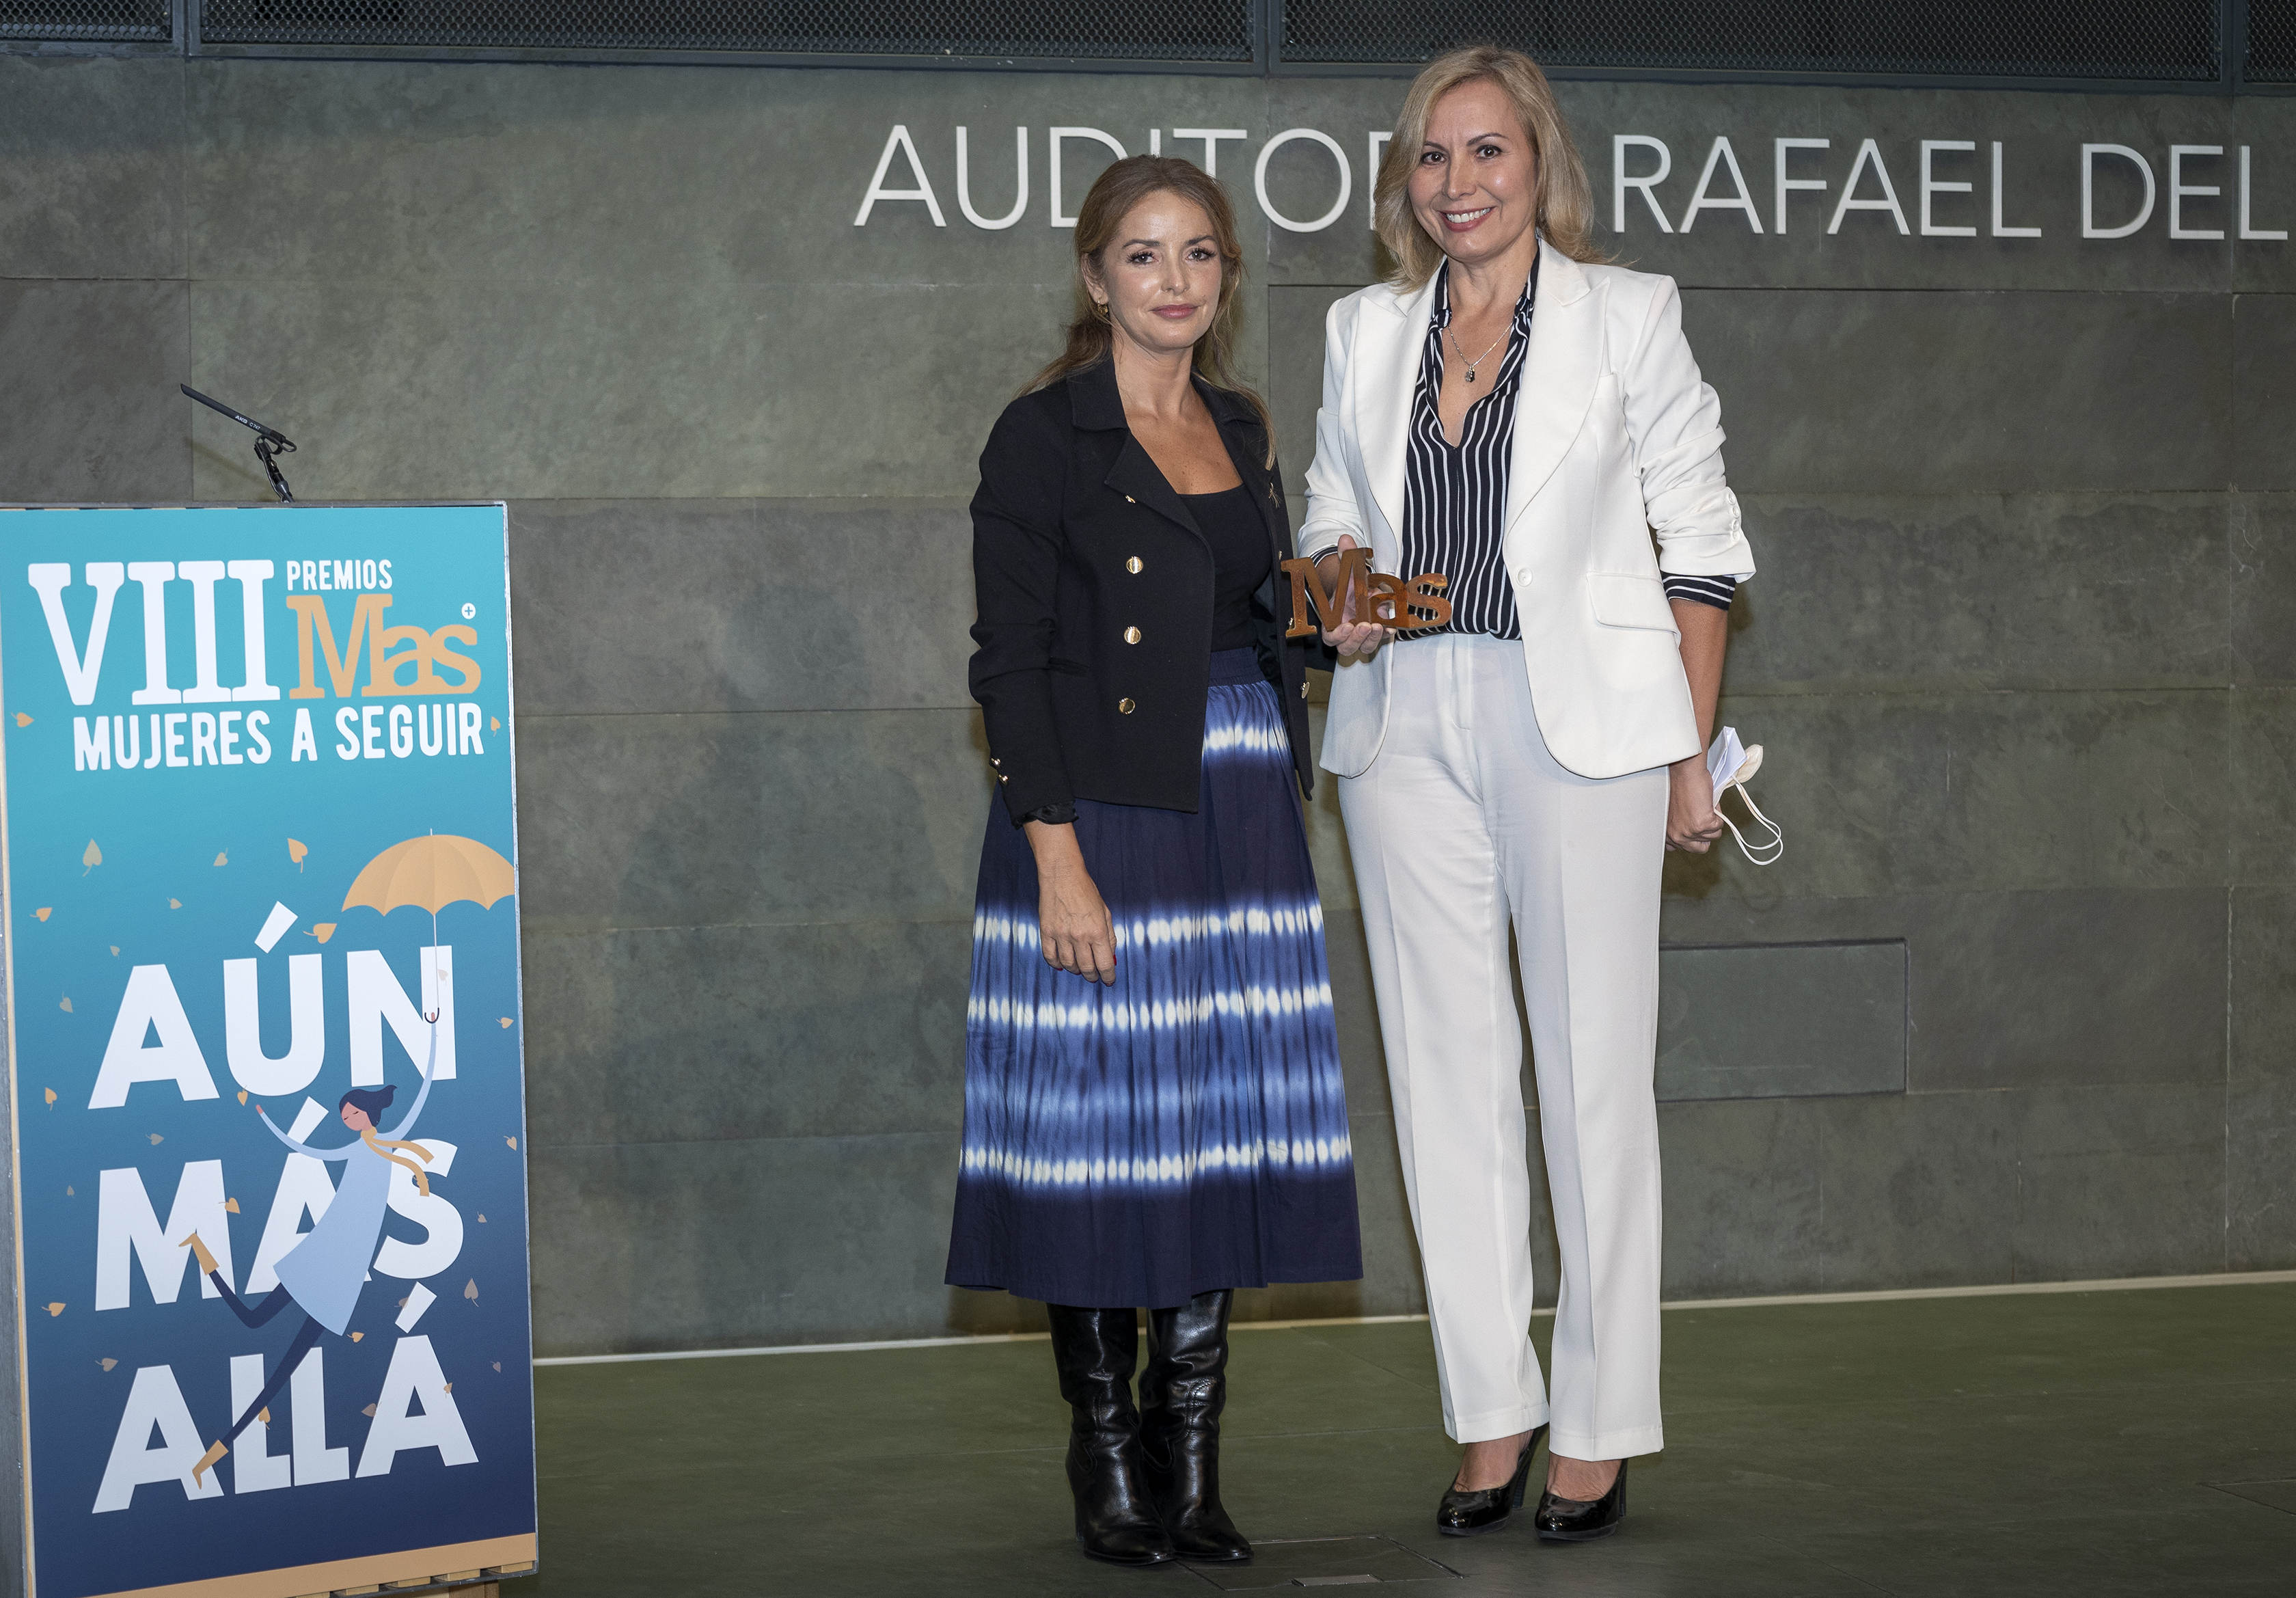 Mónica Melle (secretaria general de AMIT) recogió el premio, que le entregó Patricia Reyes (directora general de Igualdad de la Comunidad de Madrid)